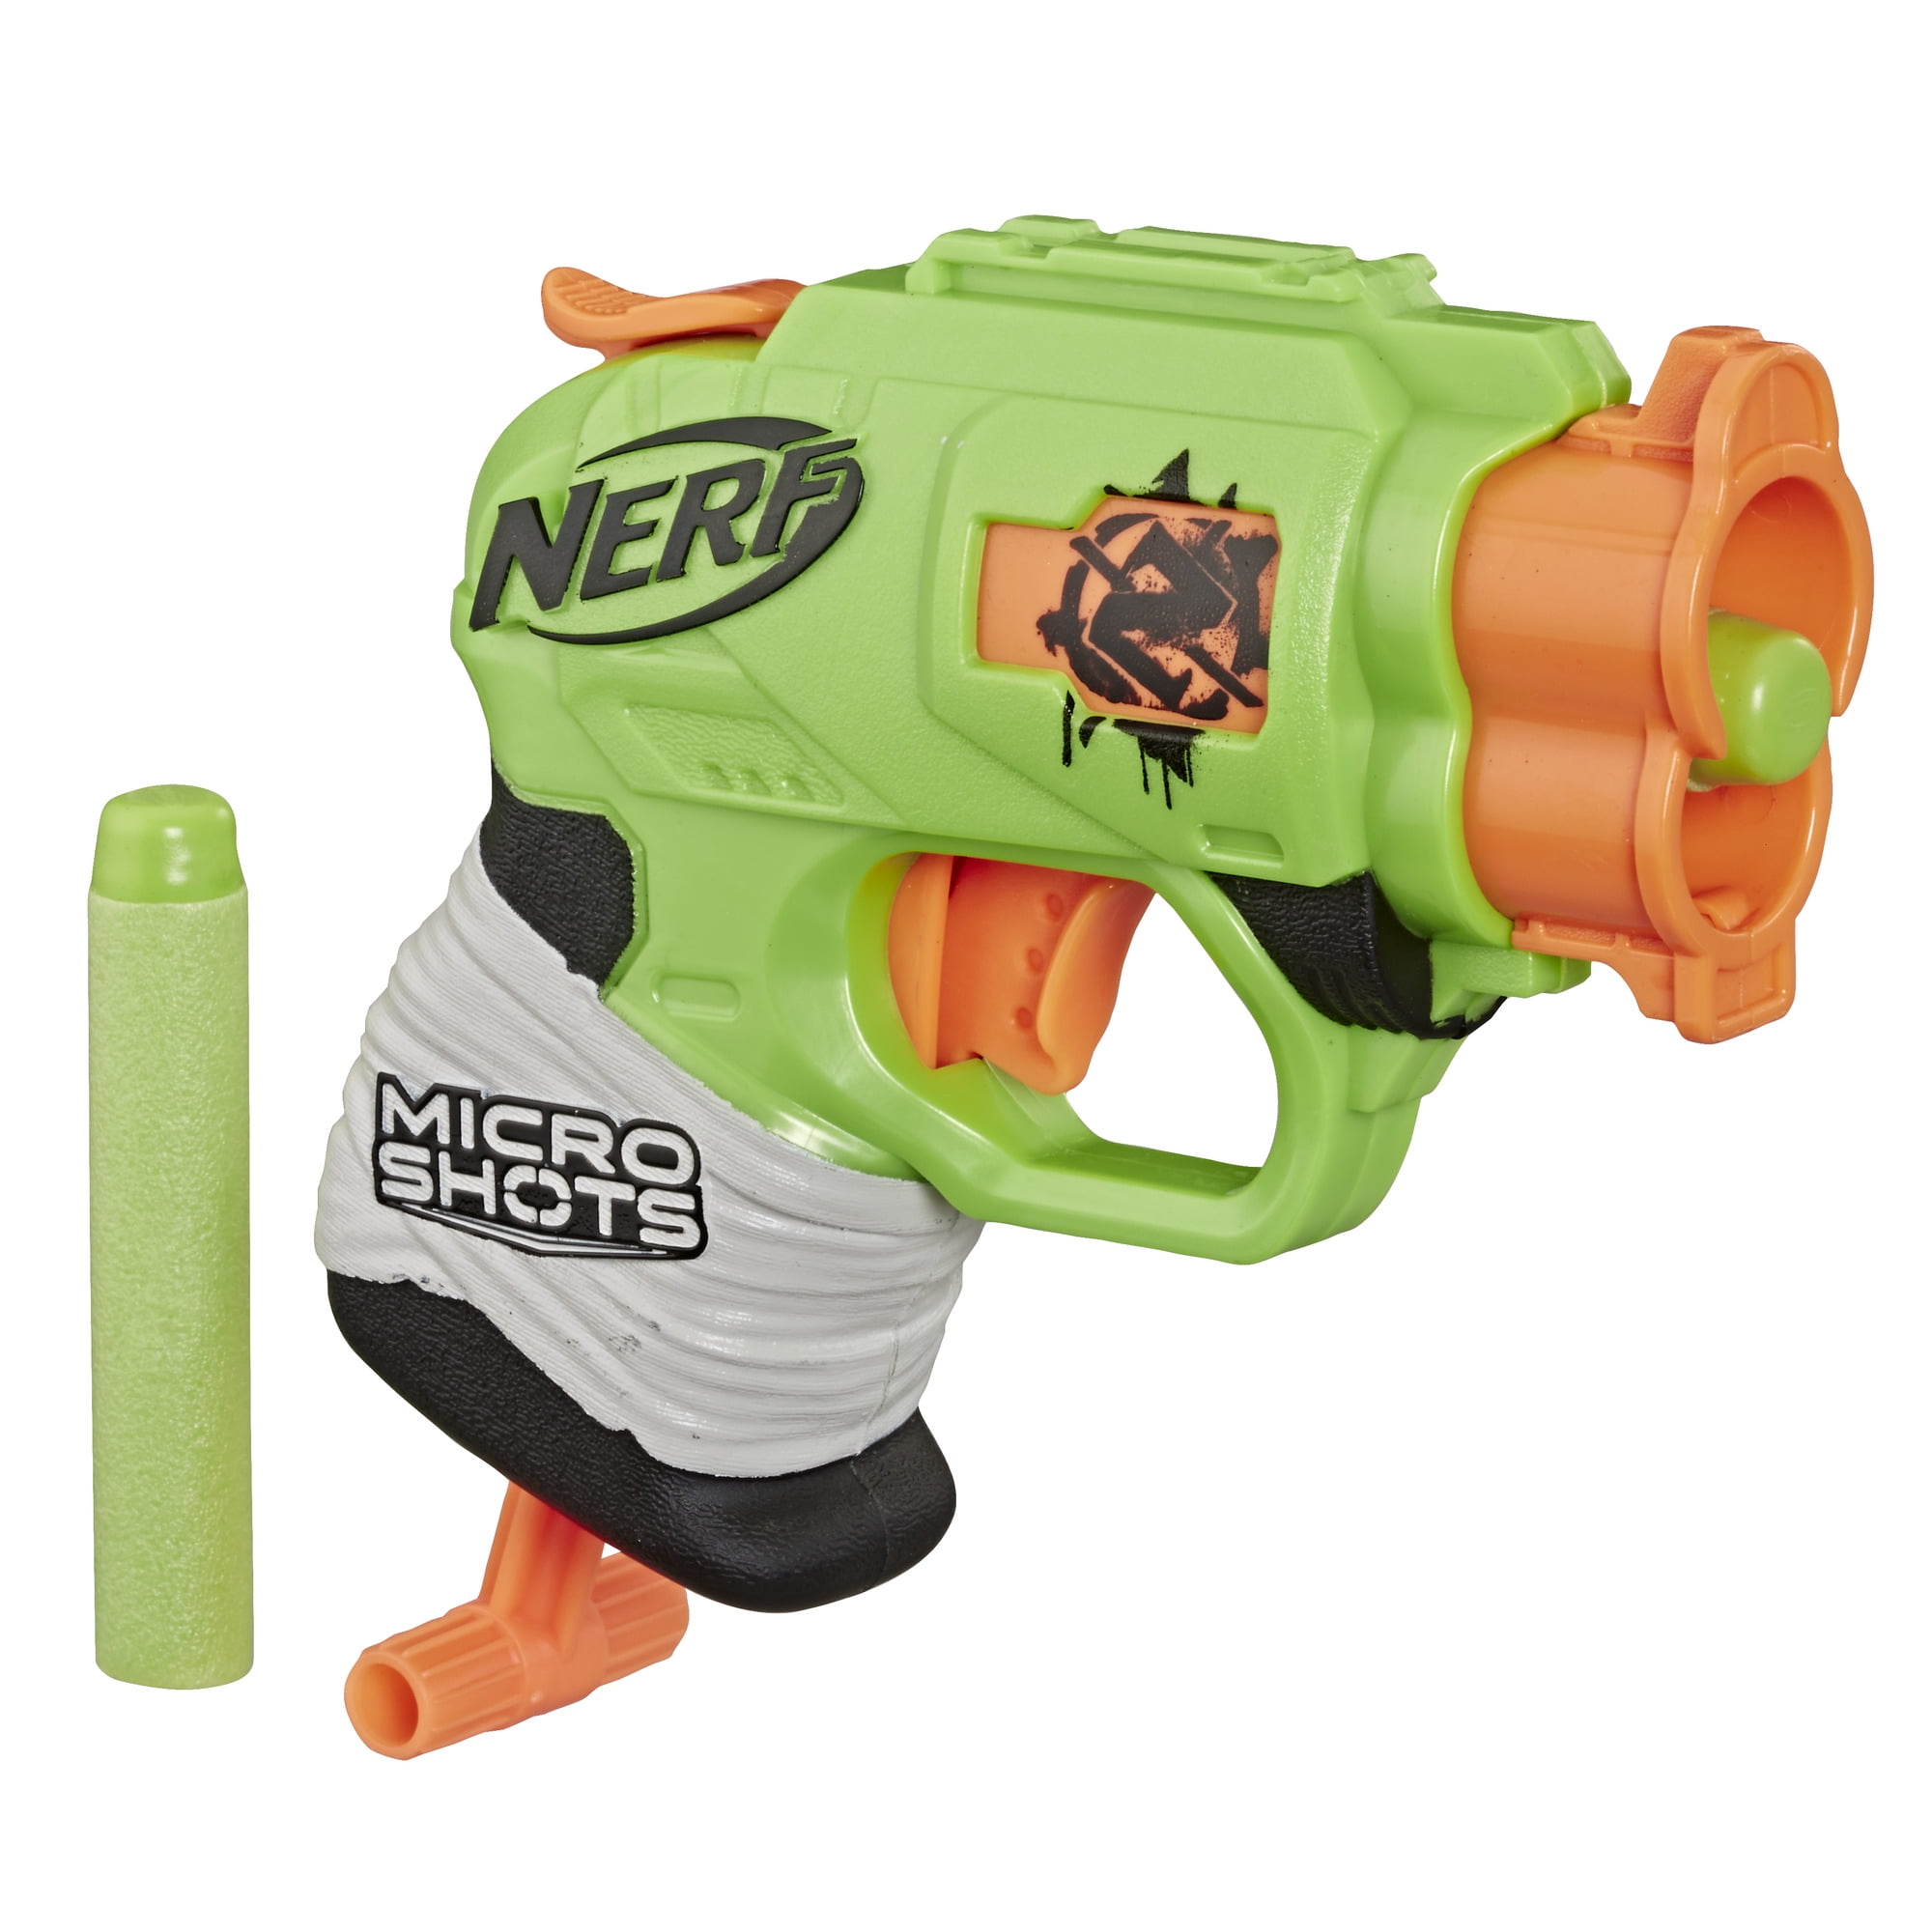 New! NERF N-STRIKE JOLT Blaster Toy Gun w/ 2 Elite Darts & Cocking